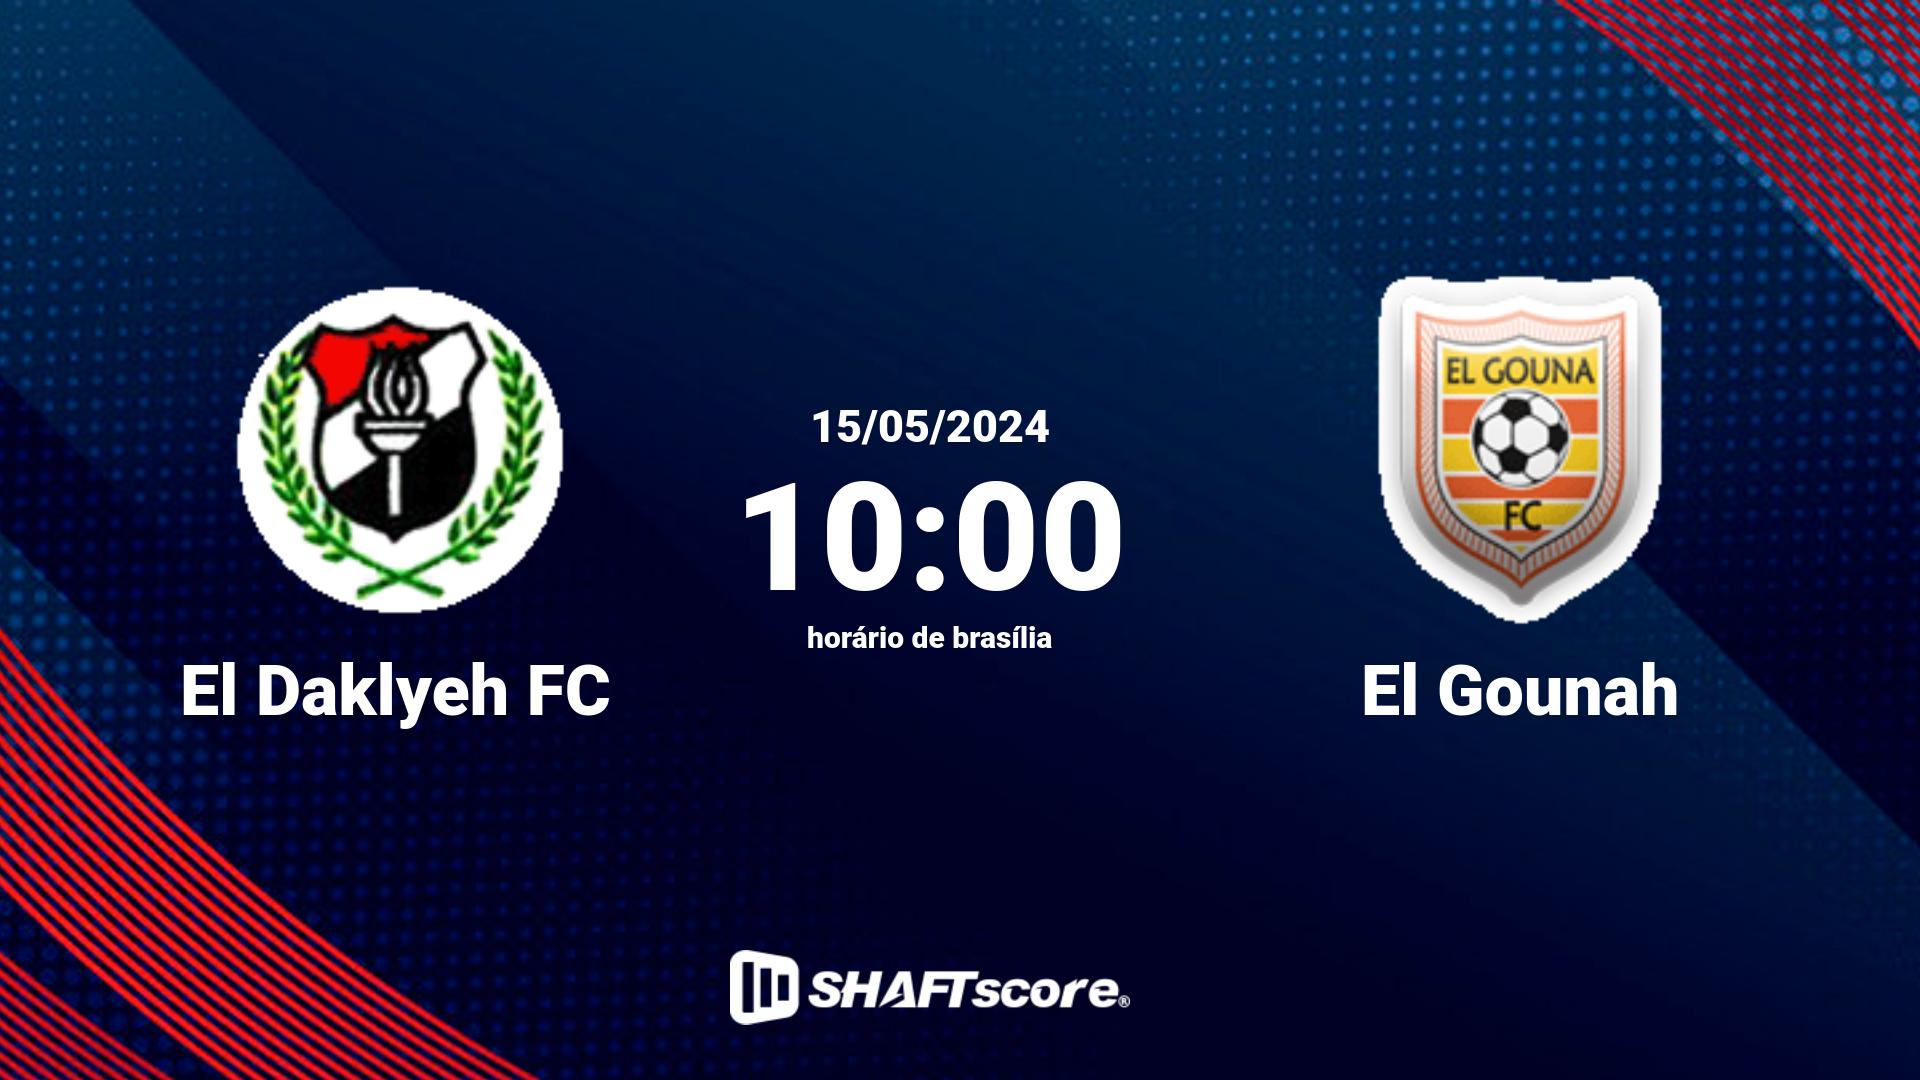 Estatísticas do jogo El Daklyeh FC vs El Gounah 15.05 10:00